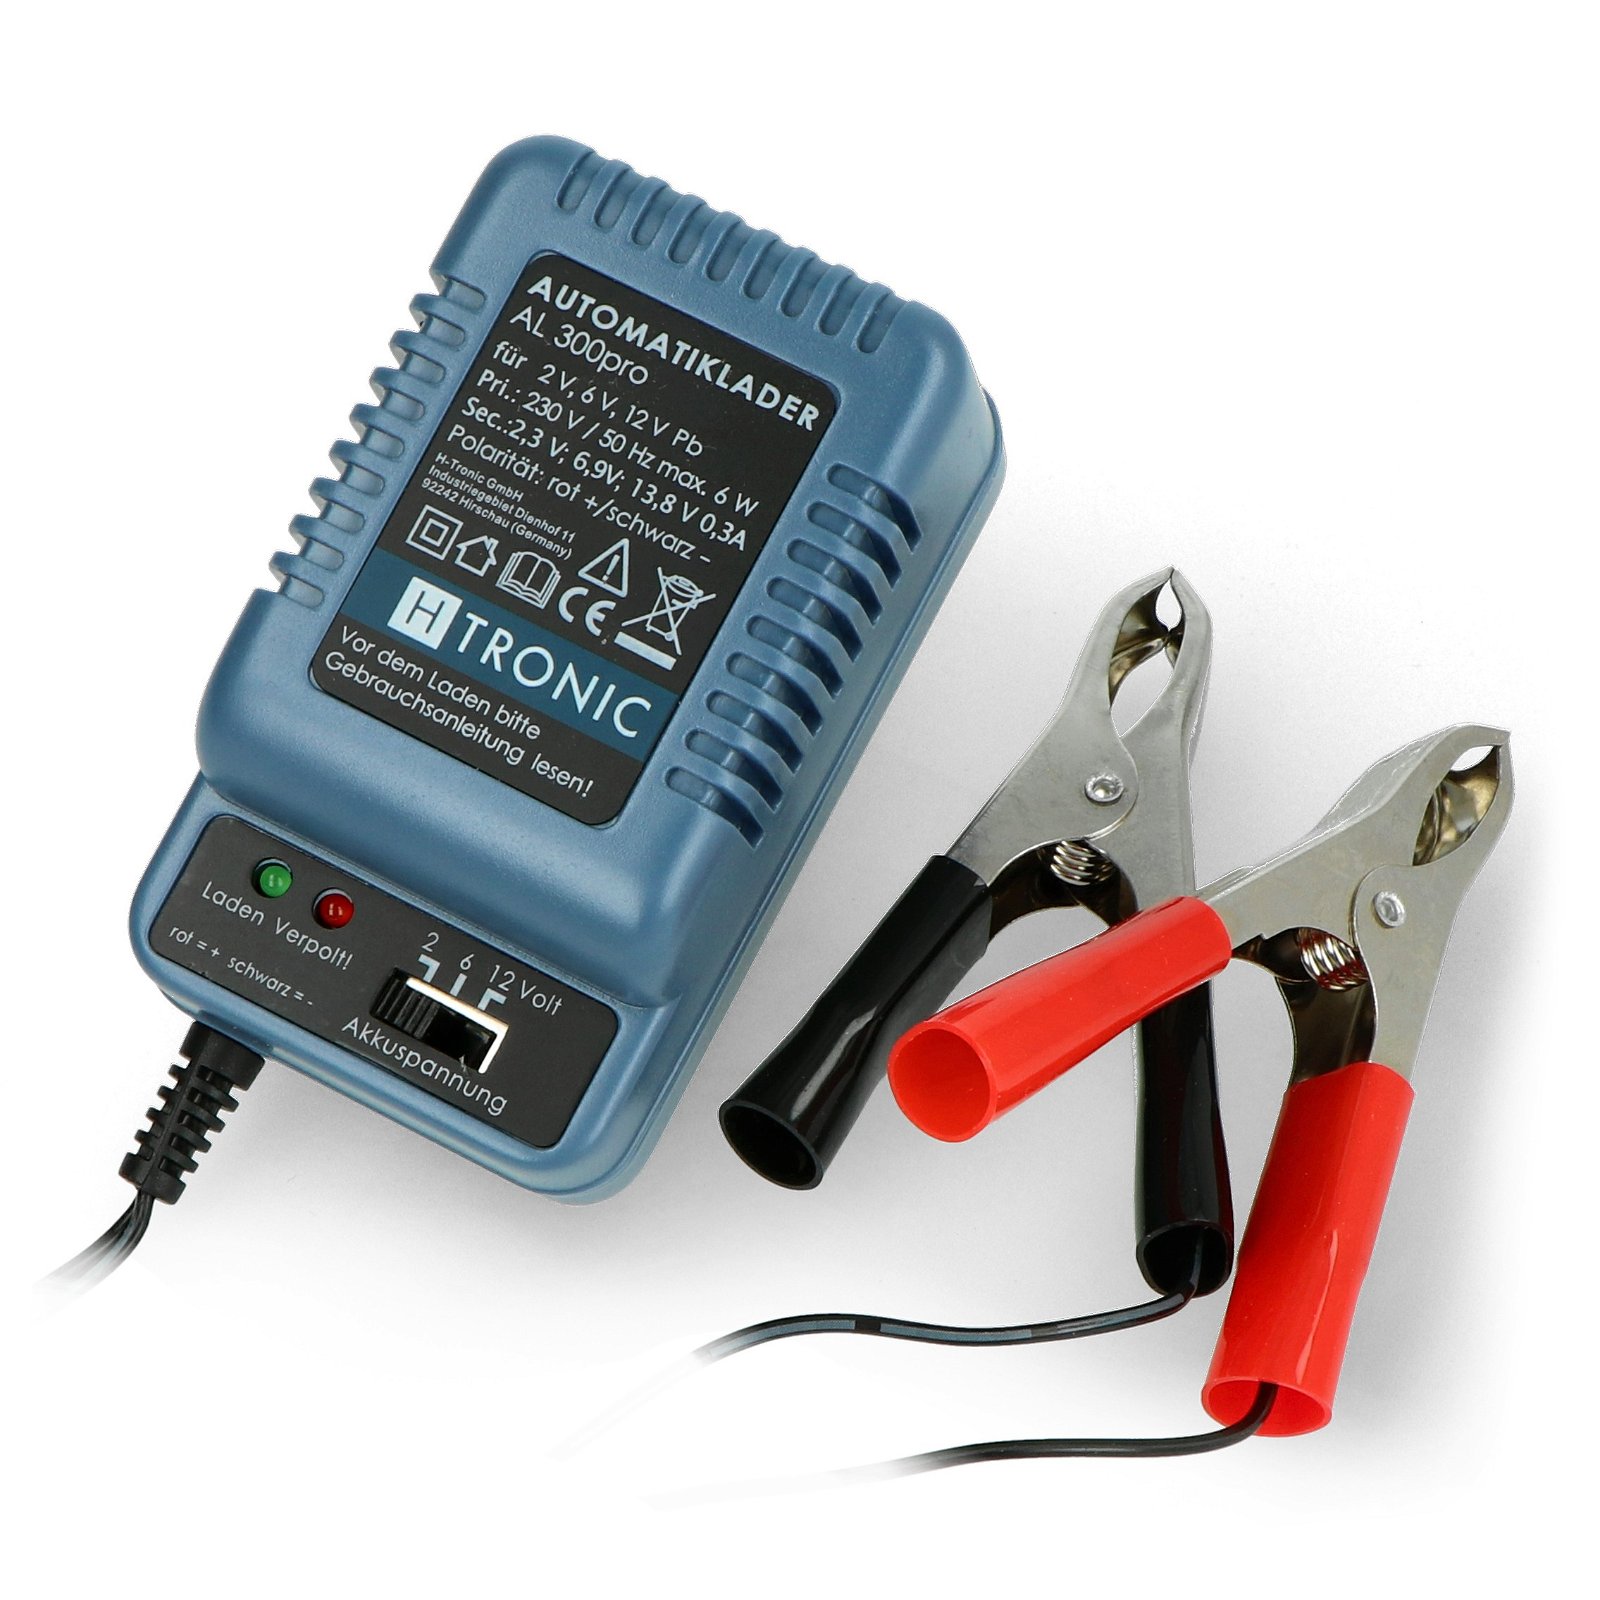 Battery charger for AL 300pro 2V / 6V / 12V gel batteries - 0,3A